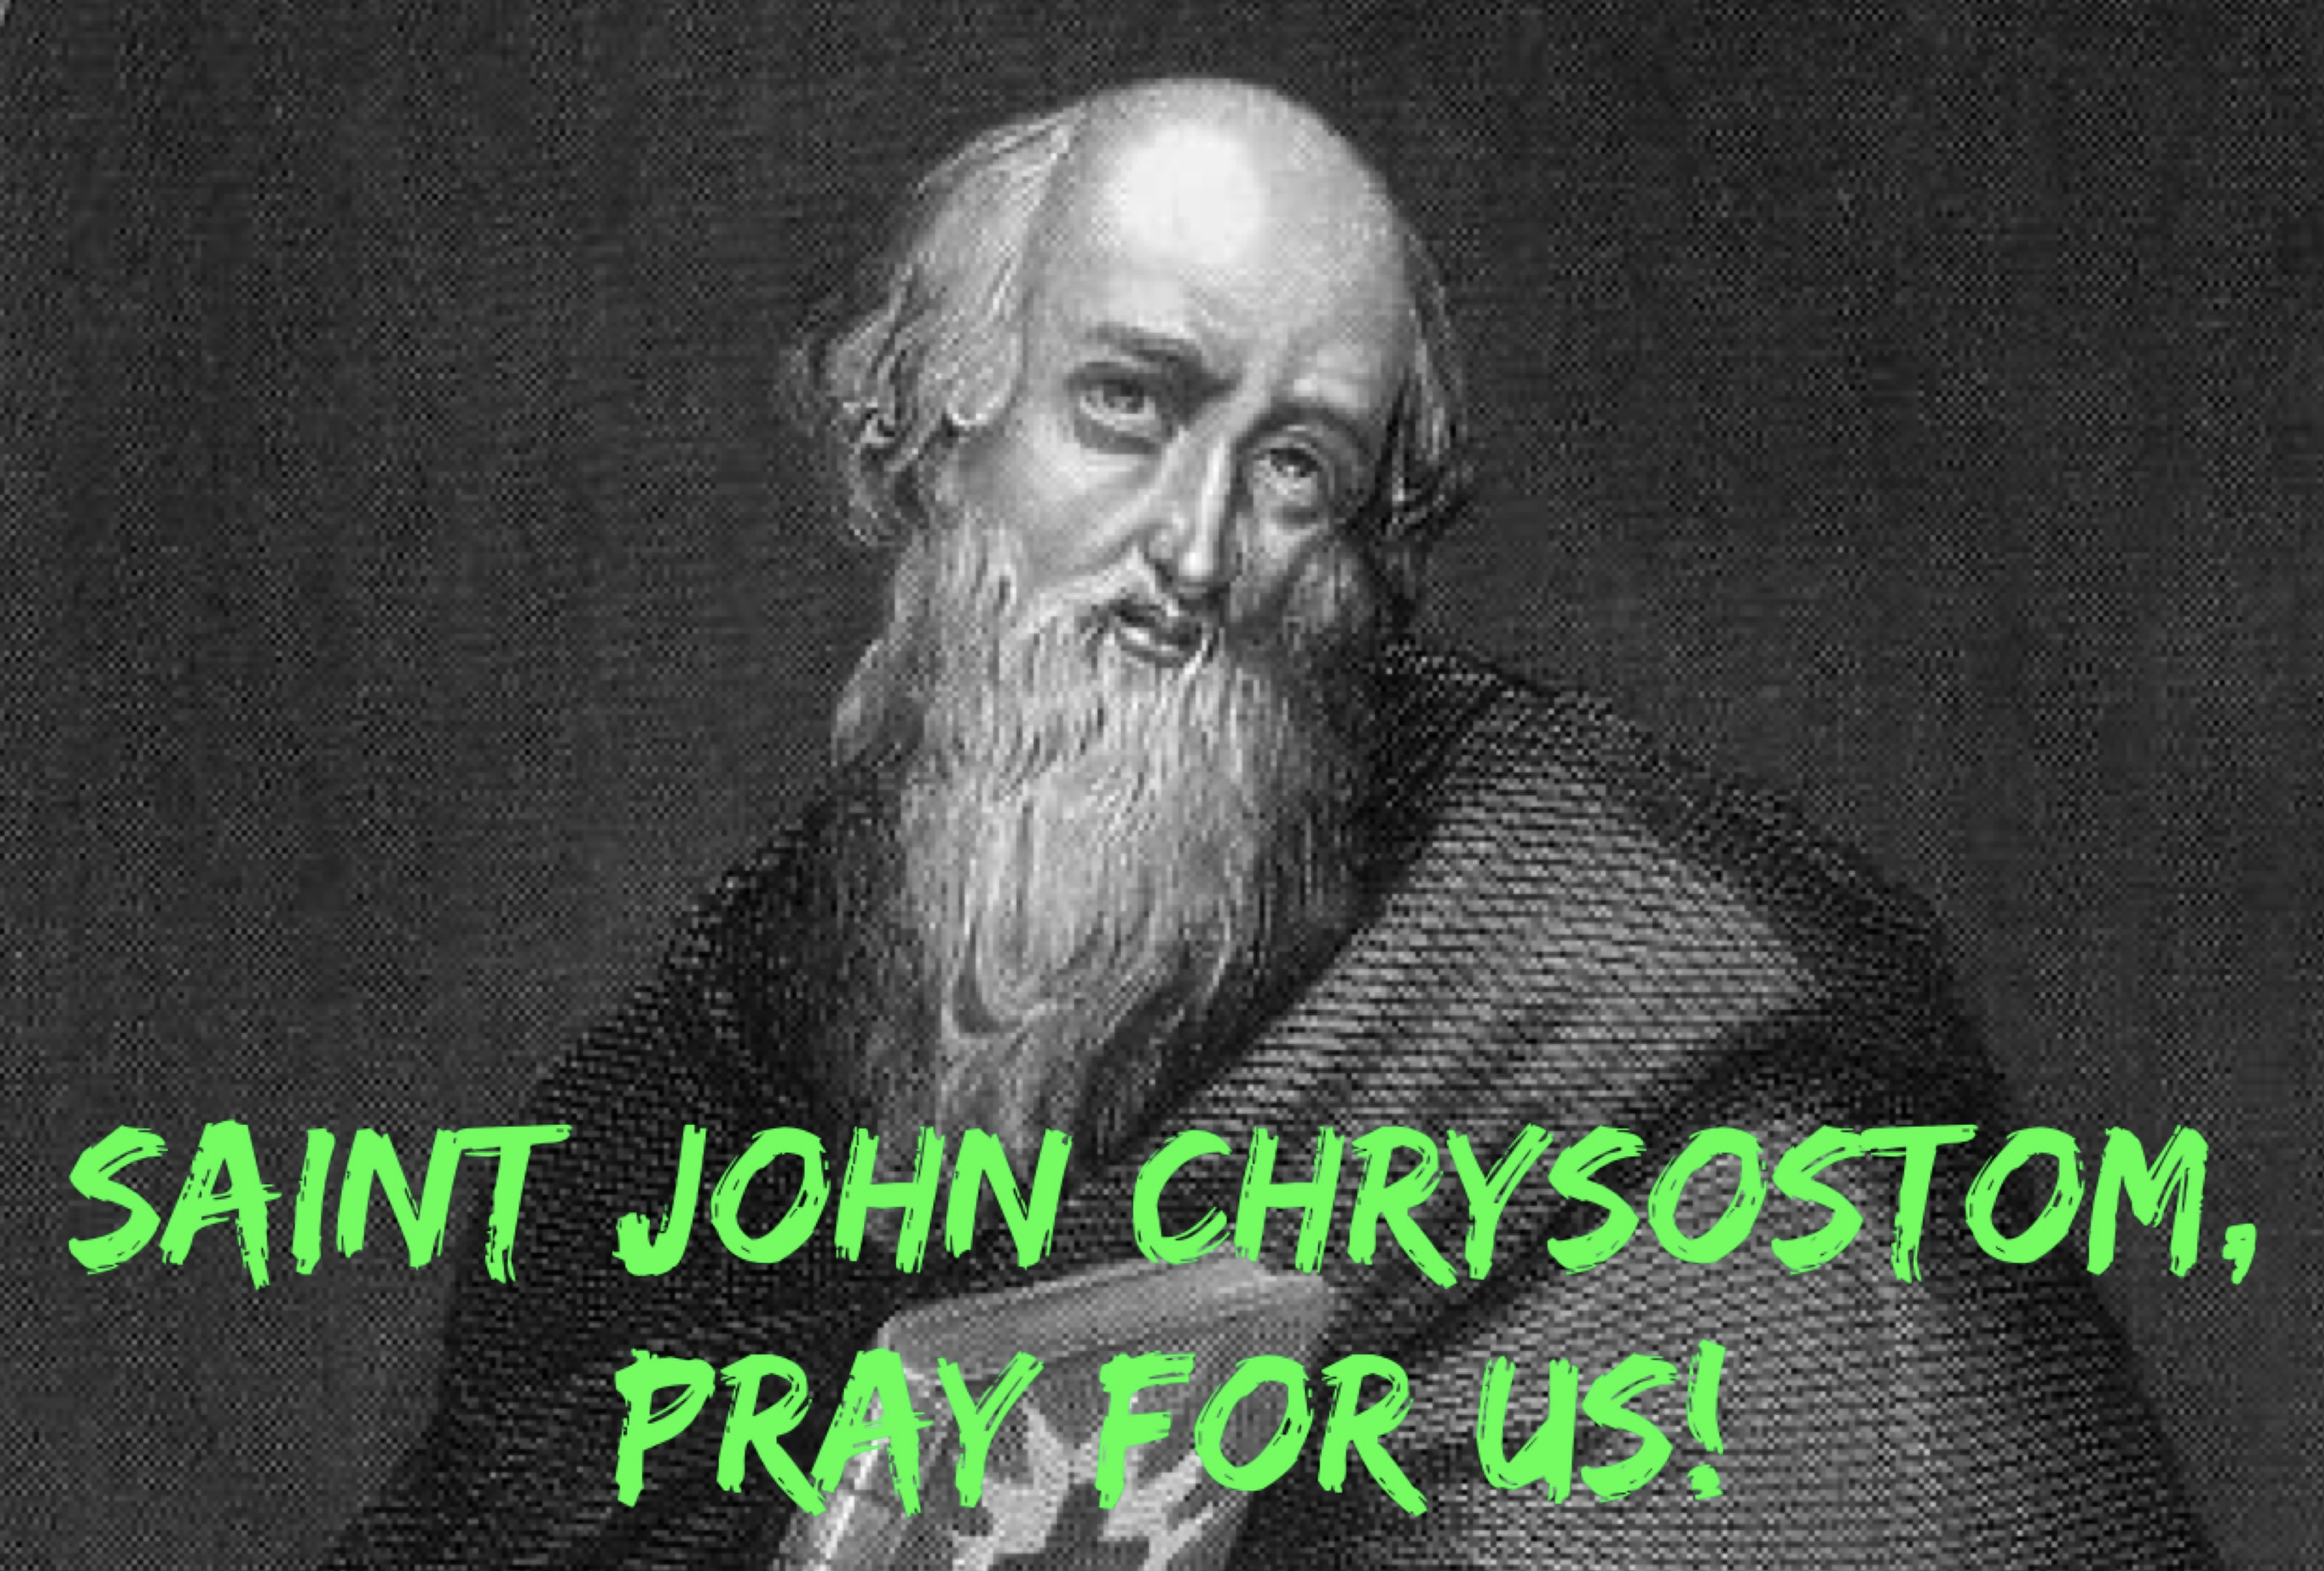 13th September - Saint John Chrysostom